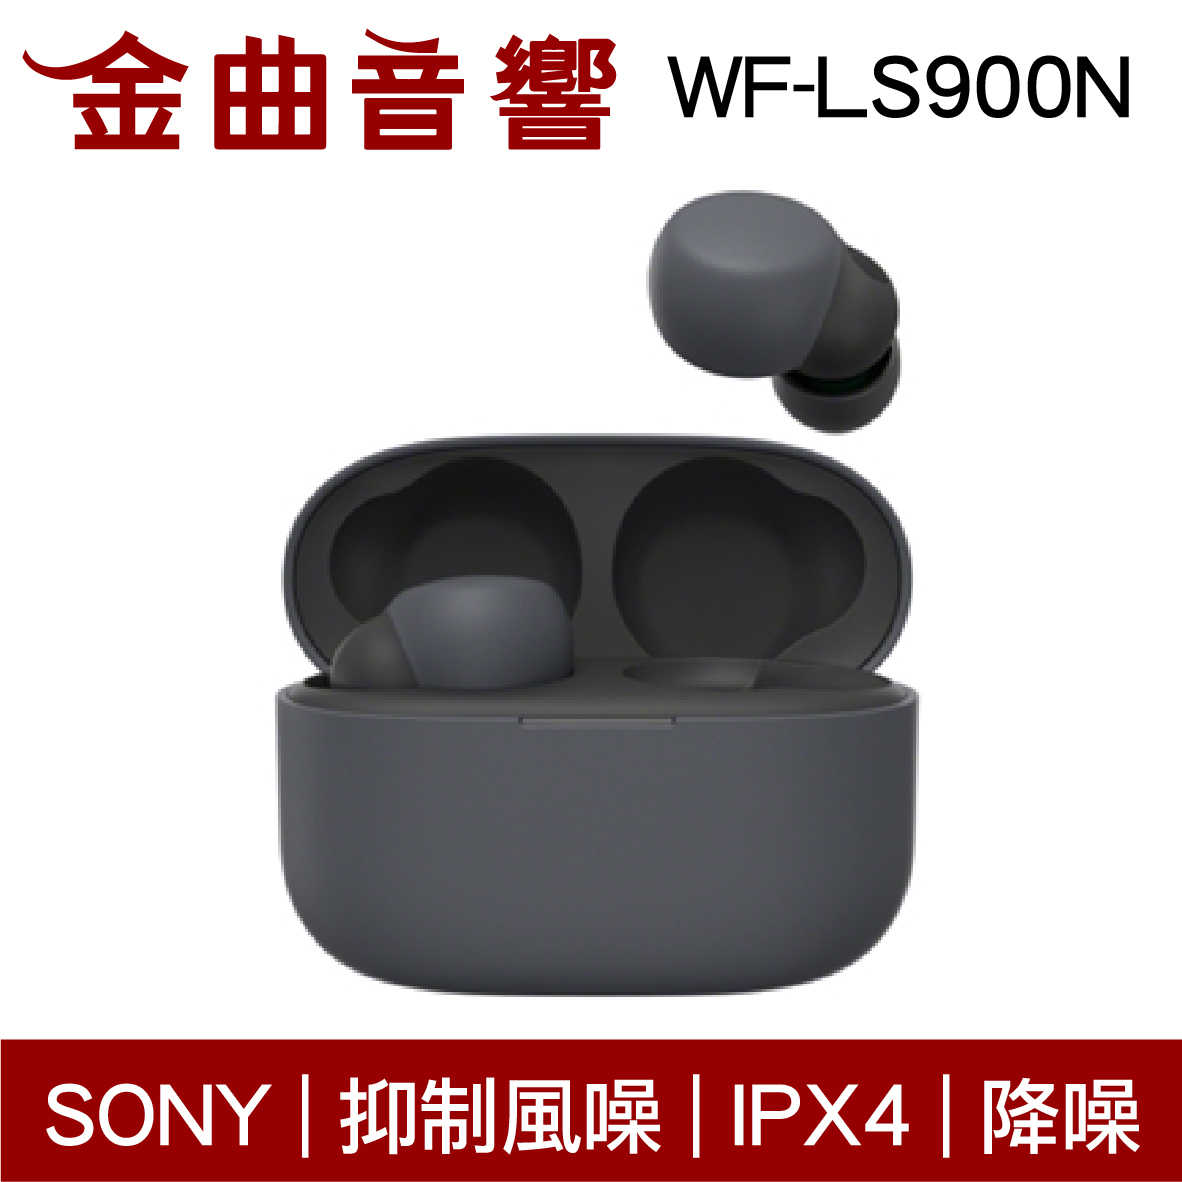 SONY 索尼 WF-LS900N 黑色 LinkBuds S 主動降噪 IPX4 真無線 藍芽耳機 | 金曲音響